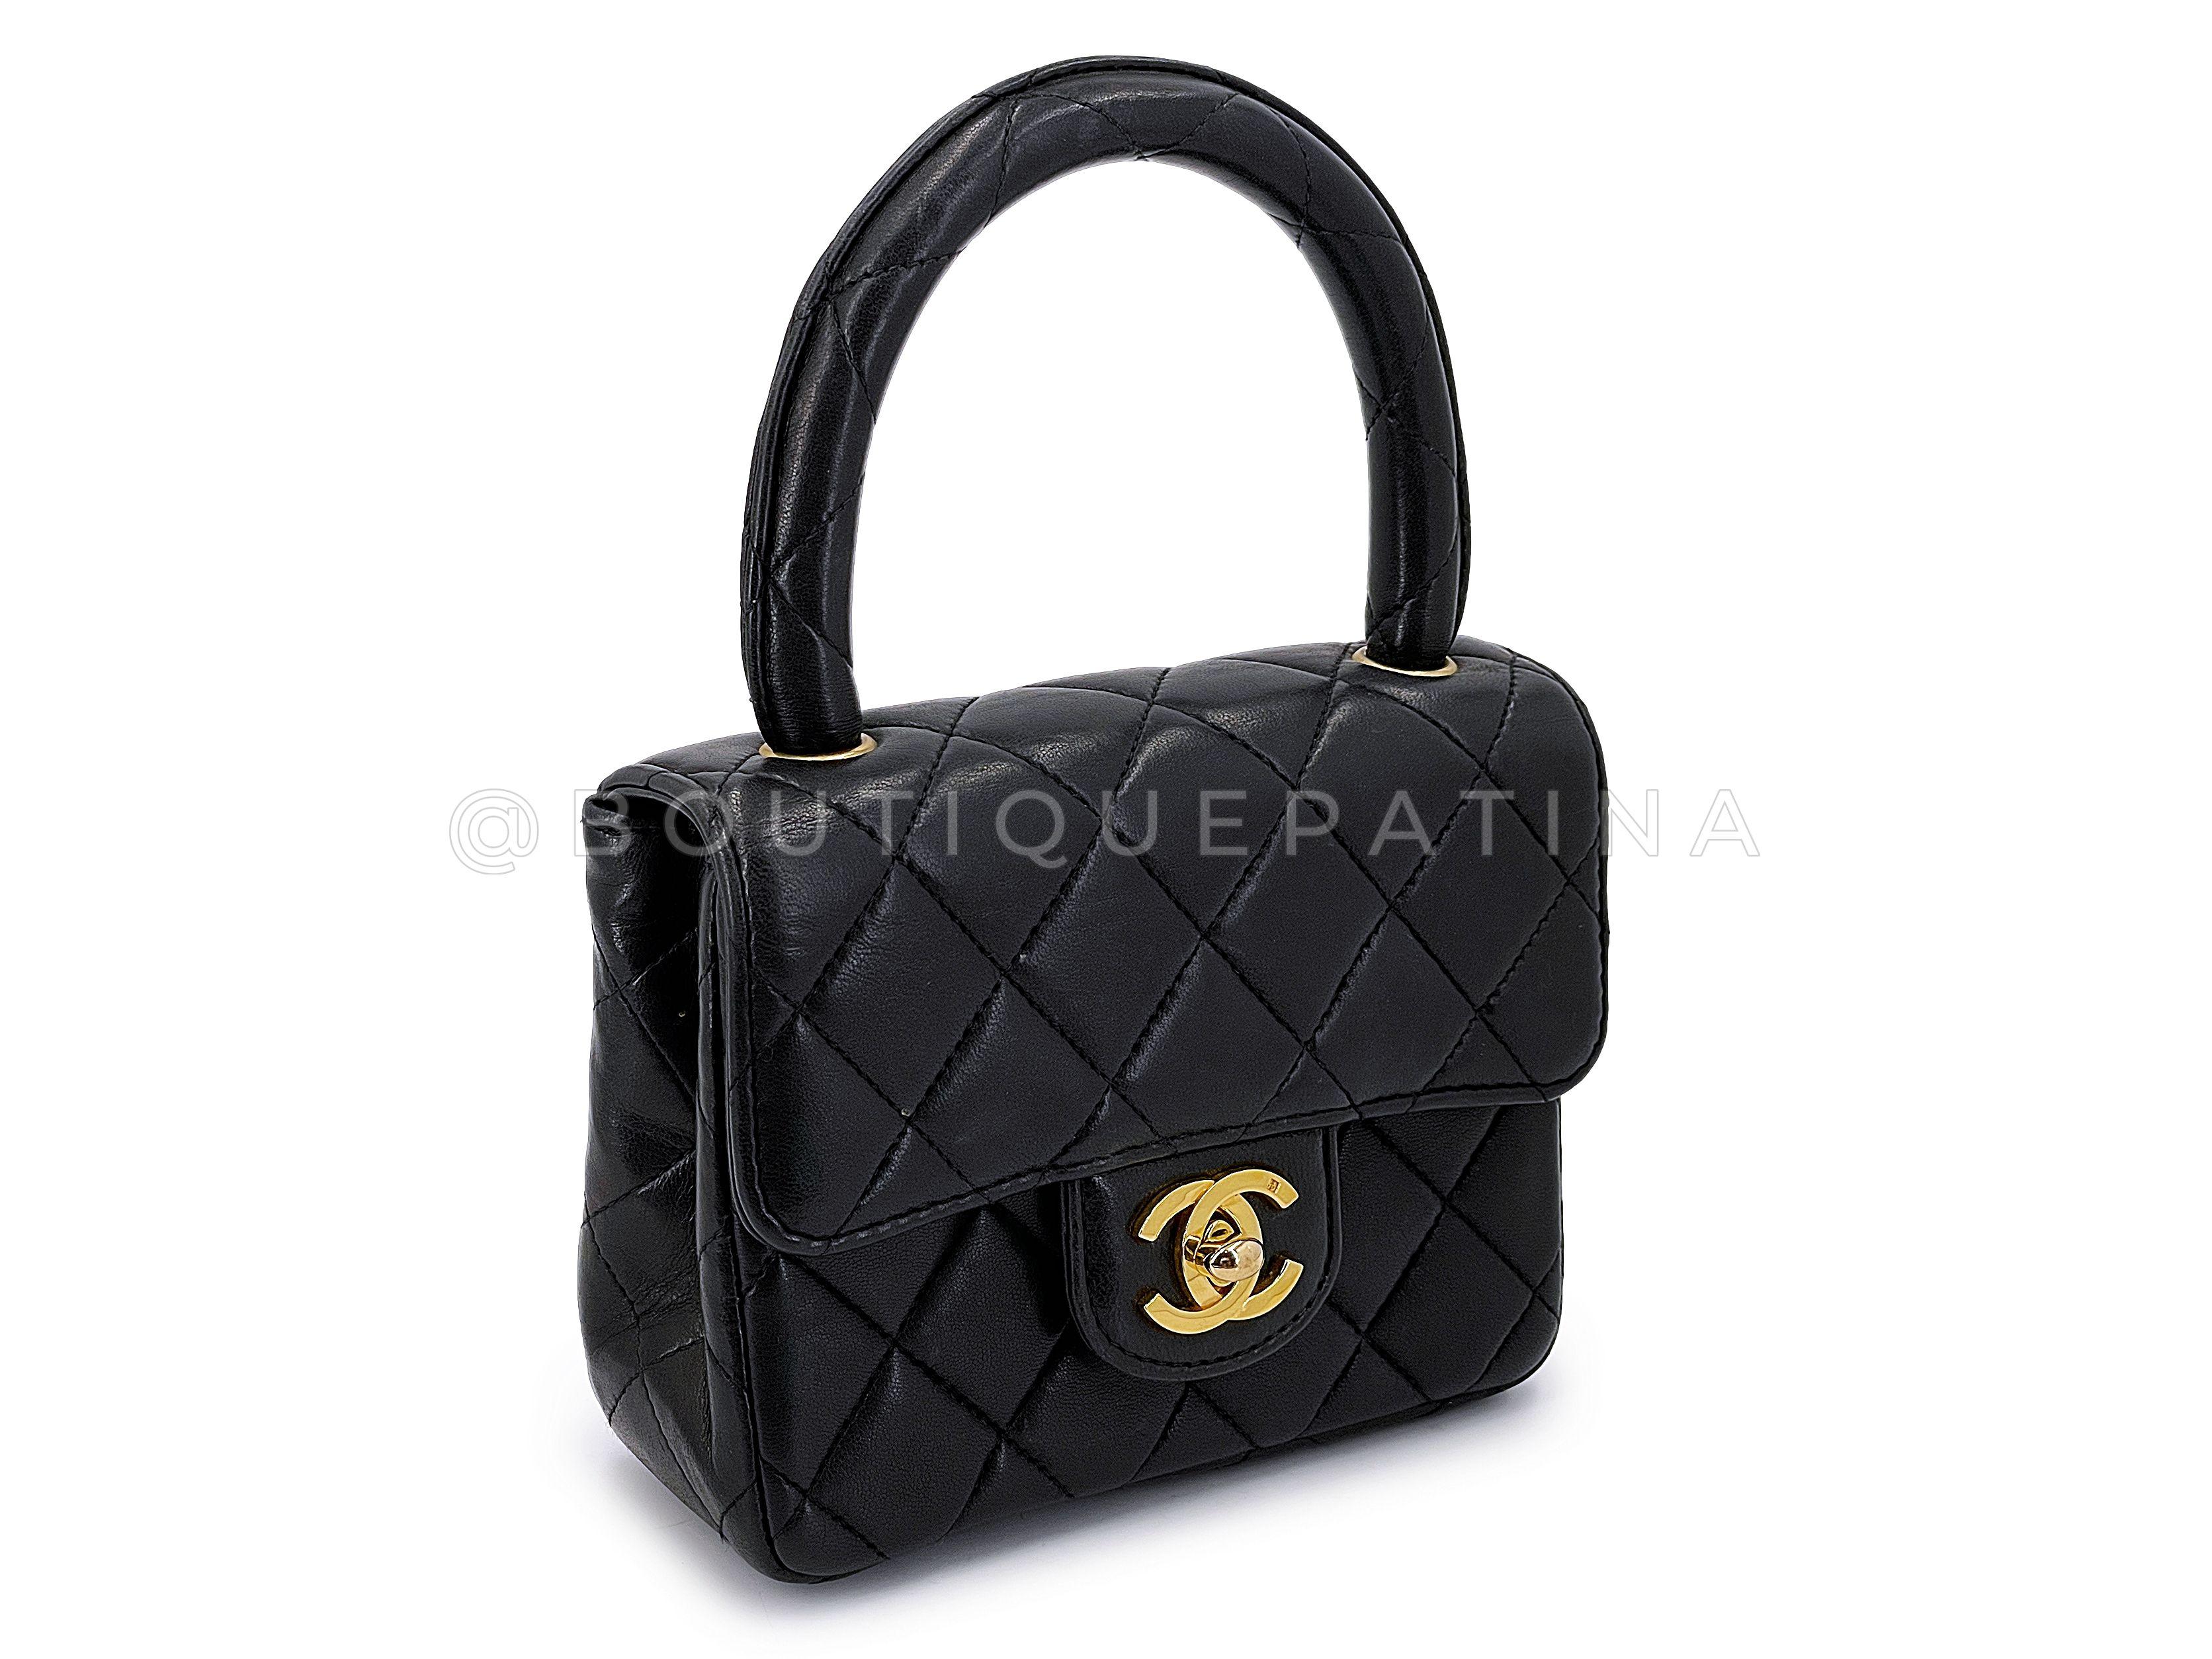 Chanel 1994 Vintage Parent Child Bag Kelly Flap Set Black 24k GHW 66669 For Sale 10